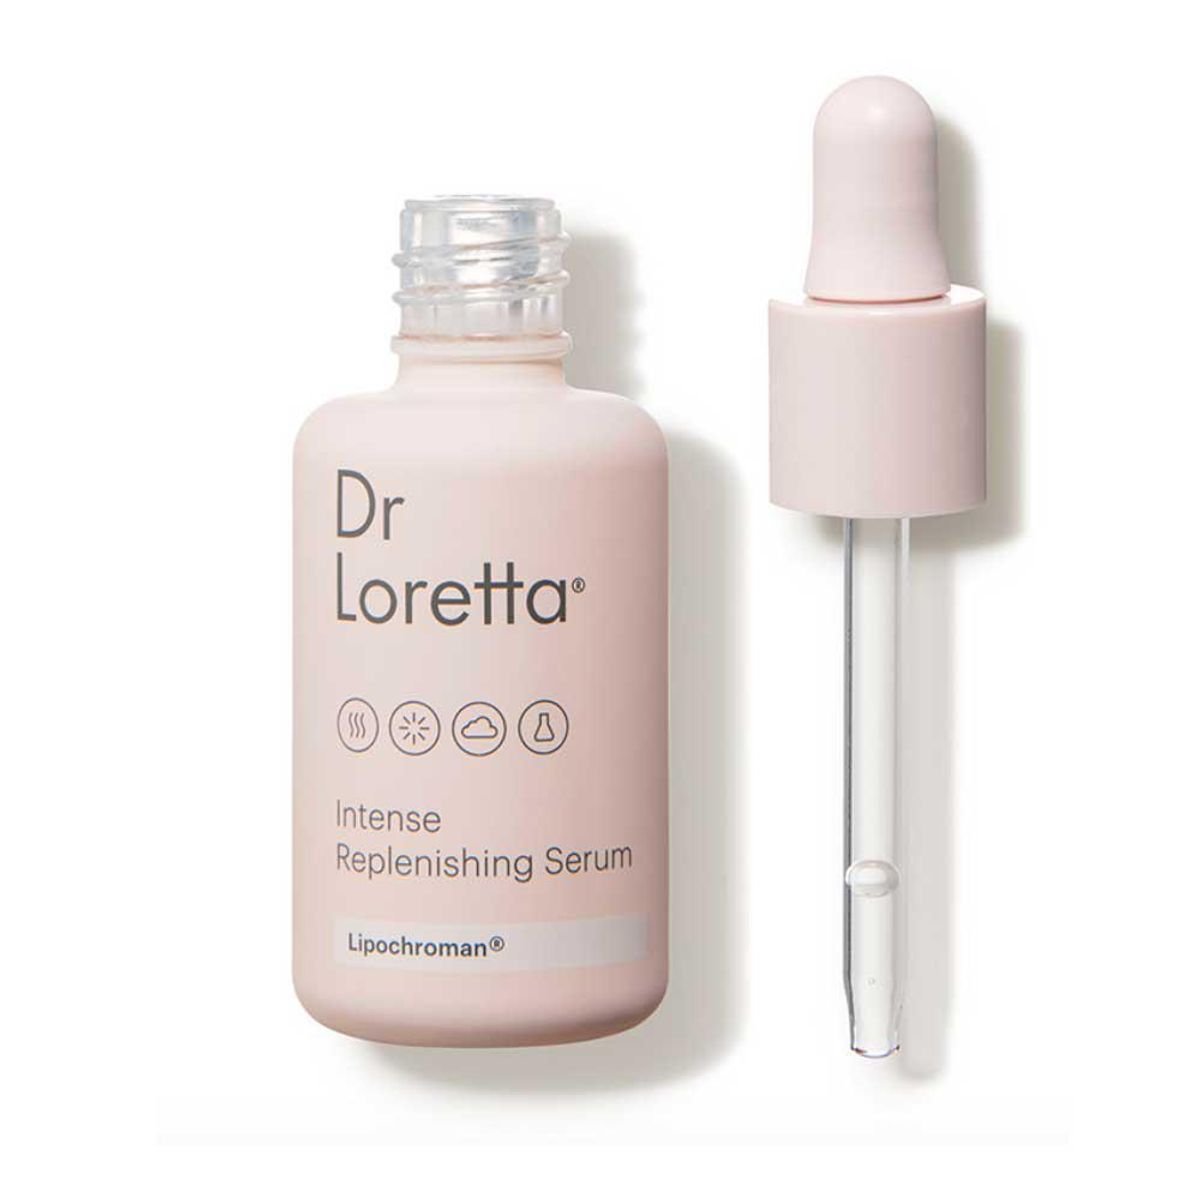 dr loretta intense replenishing serum